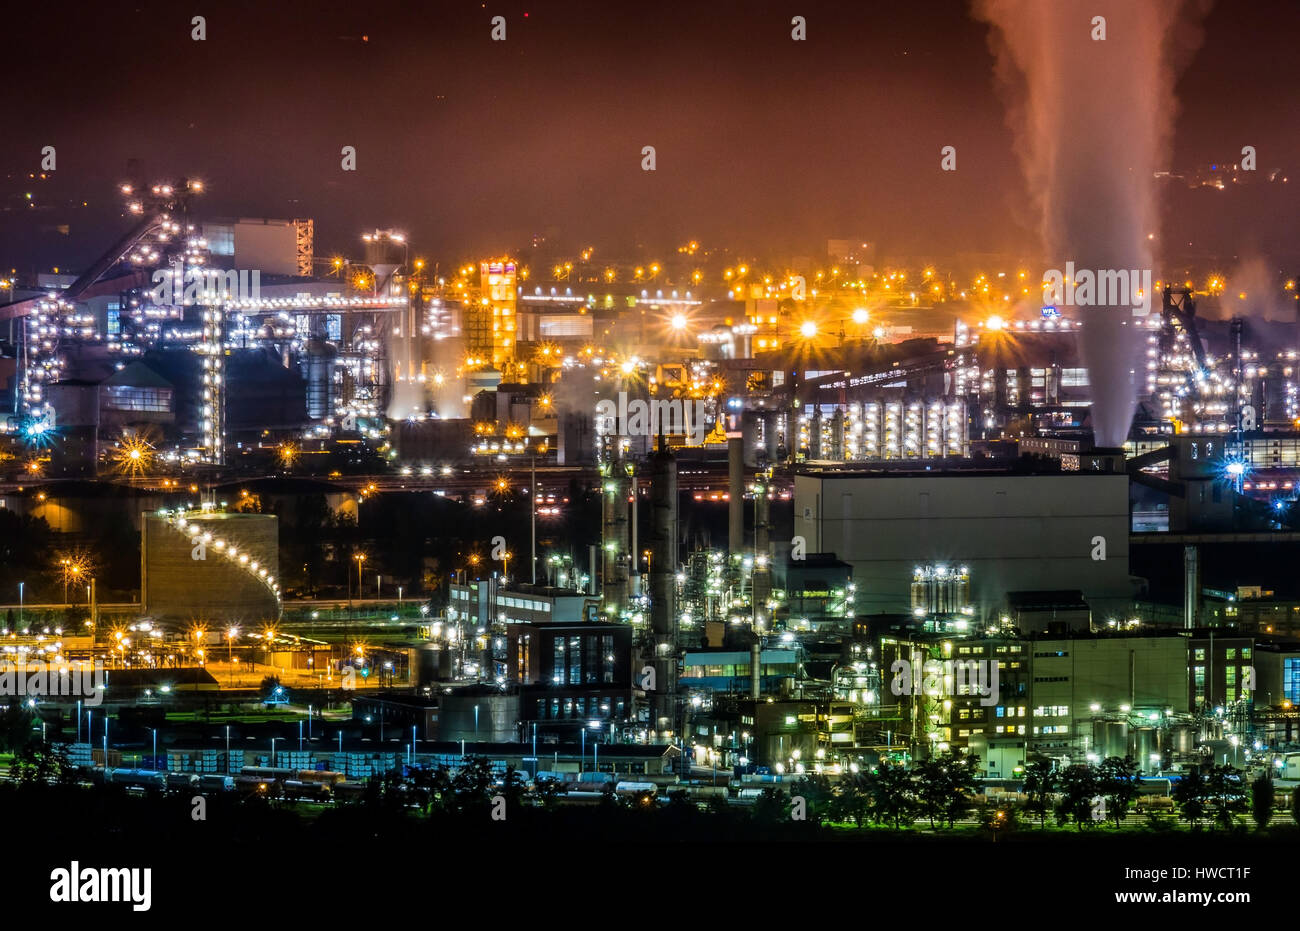 Austria, Linz, industrial area at night., Österreich, Industriegelände bei Nacht. Stock Photo